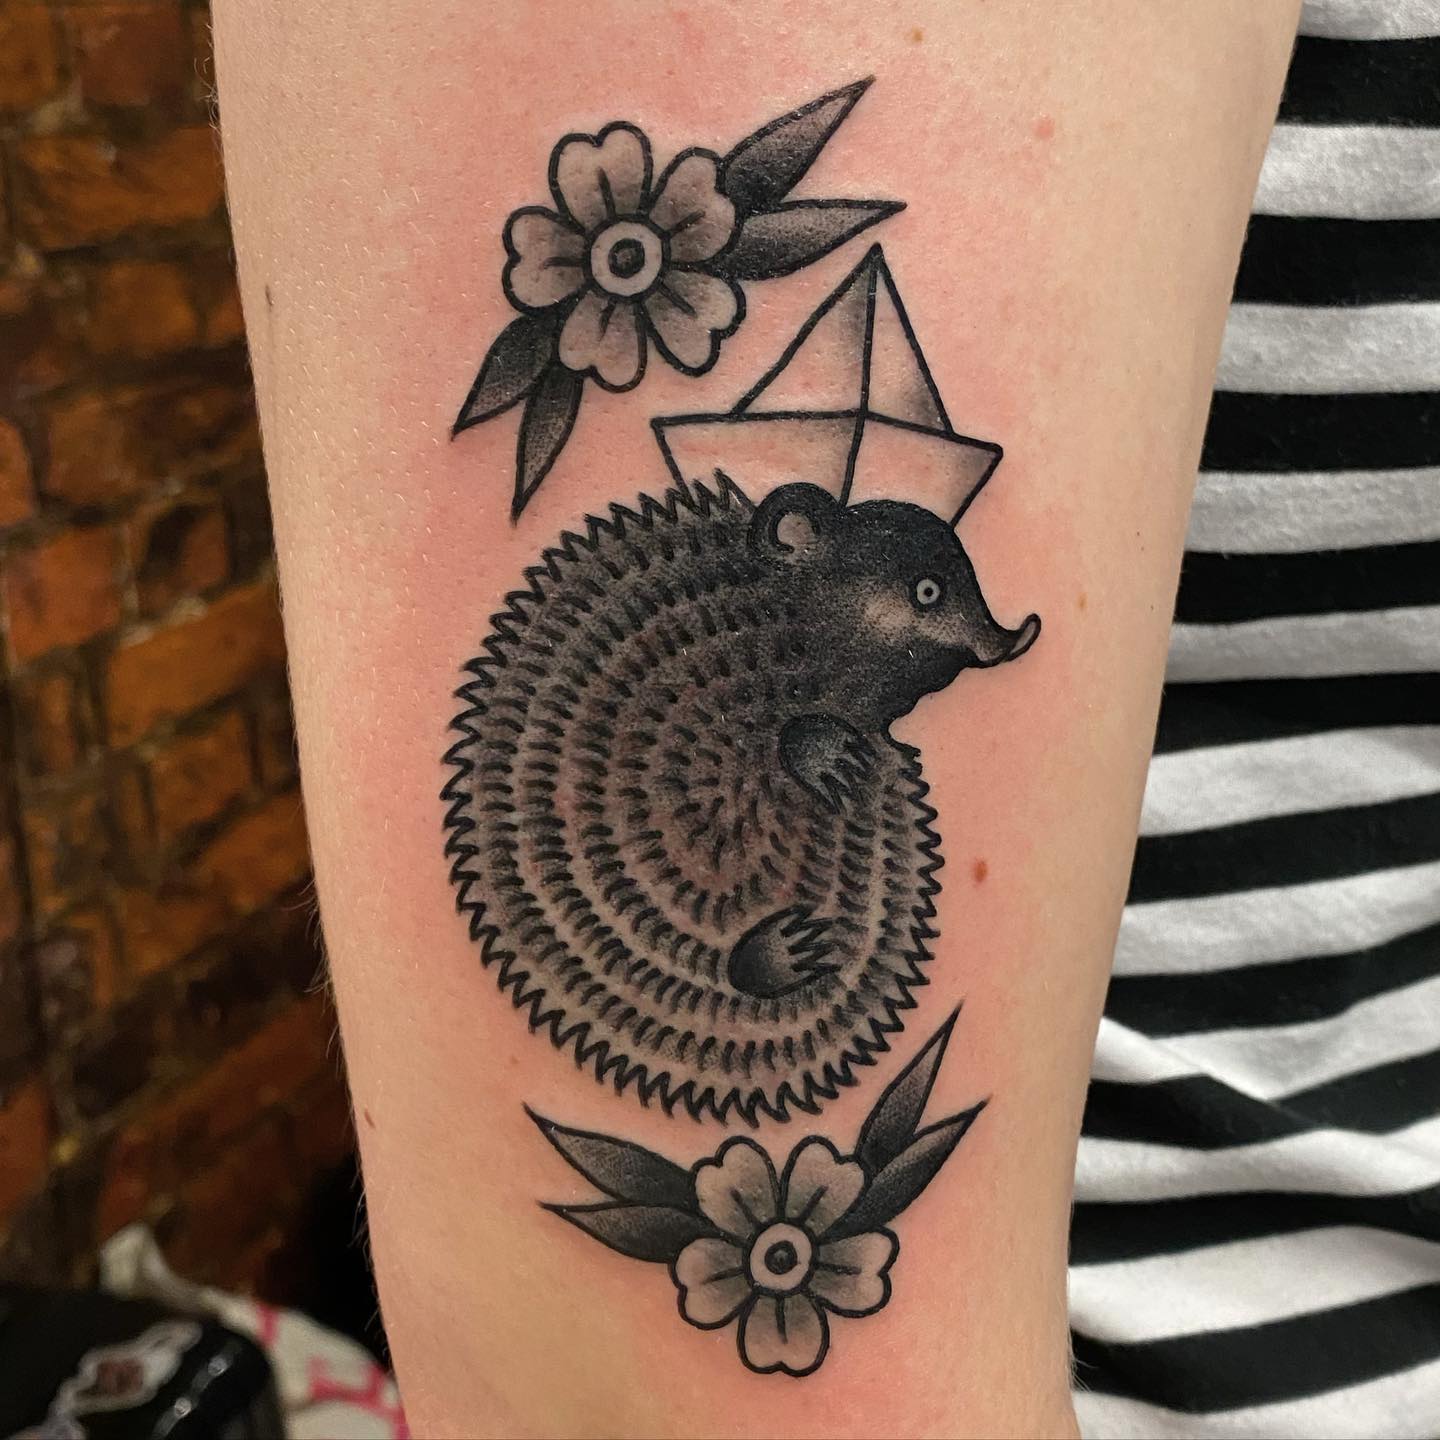 hedgehog tattoo - IG jontteritontteri